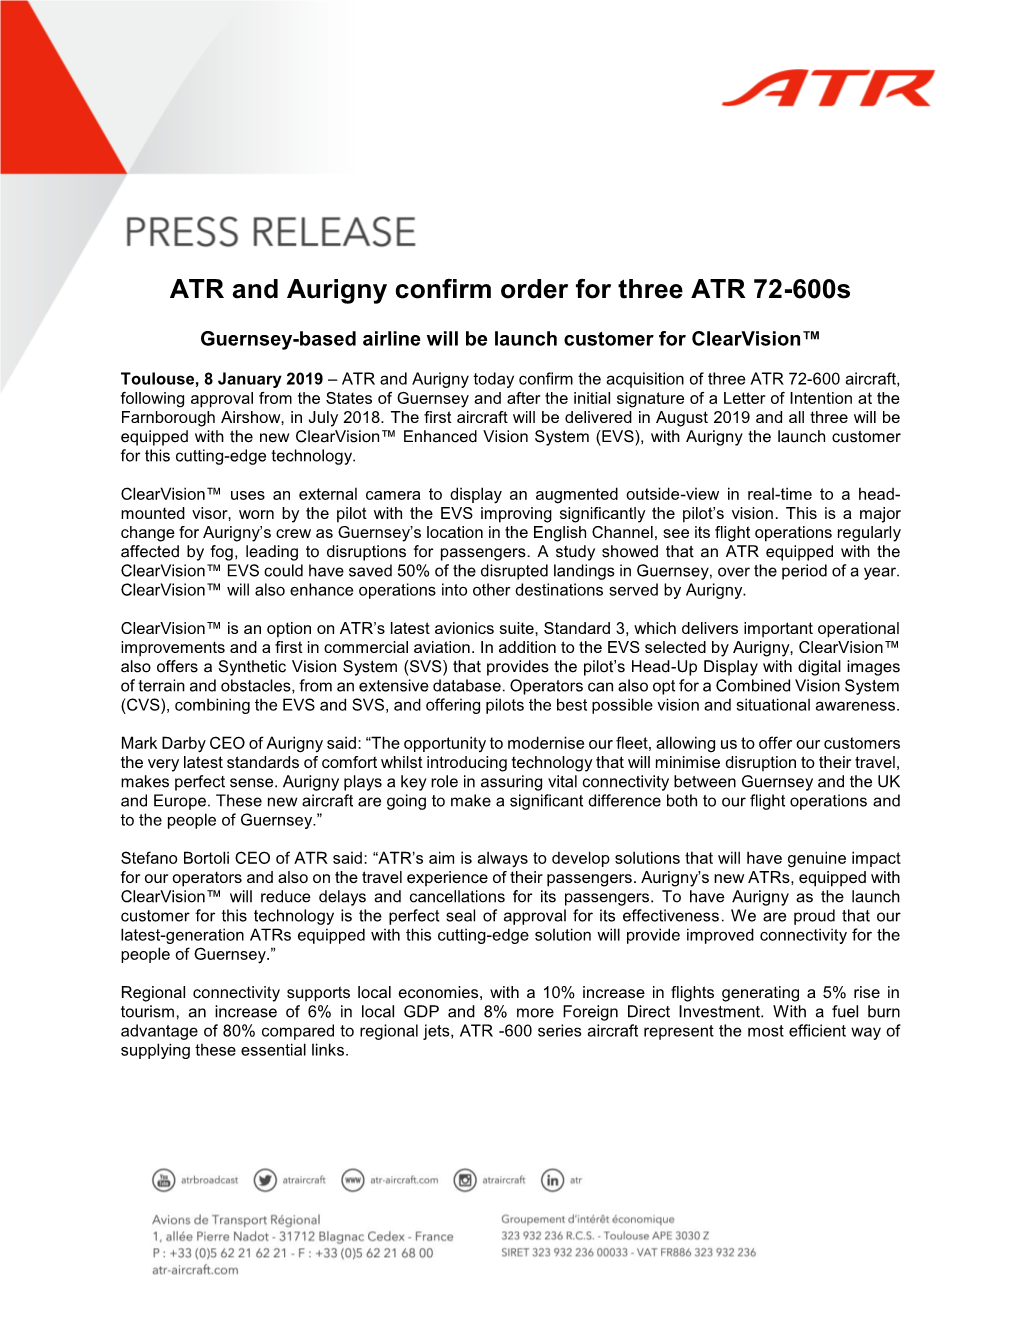 ATR and Aurigny Confirm Order for Three ATR 72-600S